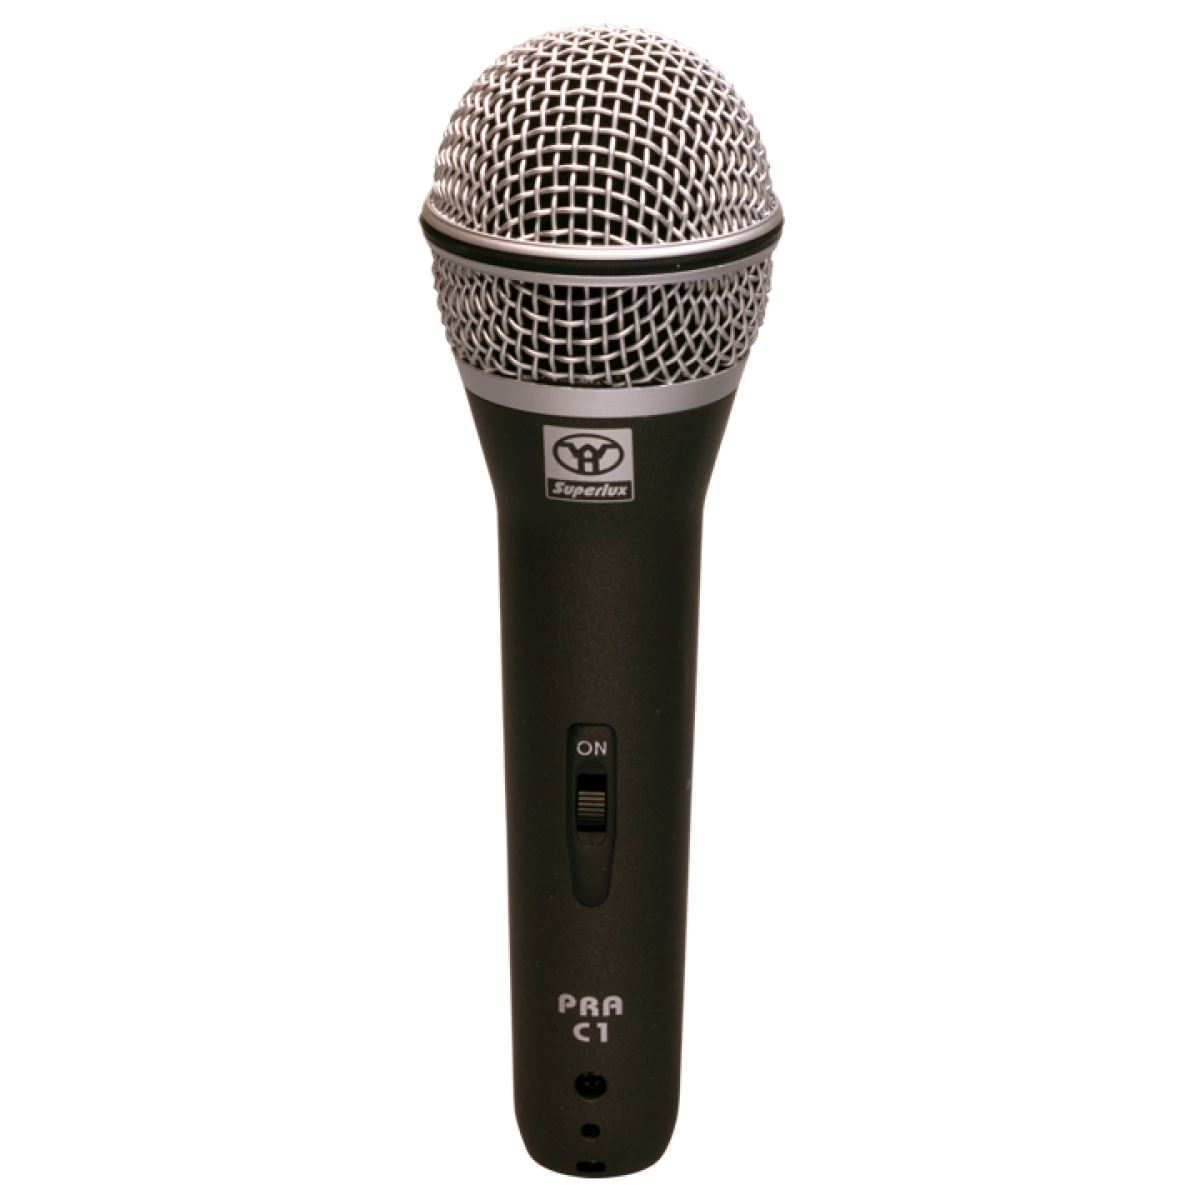 Shure pg58 XLR микрофон. Volta DM-b58 микрофон. Микрофон Shure pg48-XLR. Микрофон Behringer SL 85s. Купить микрофон дешево